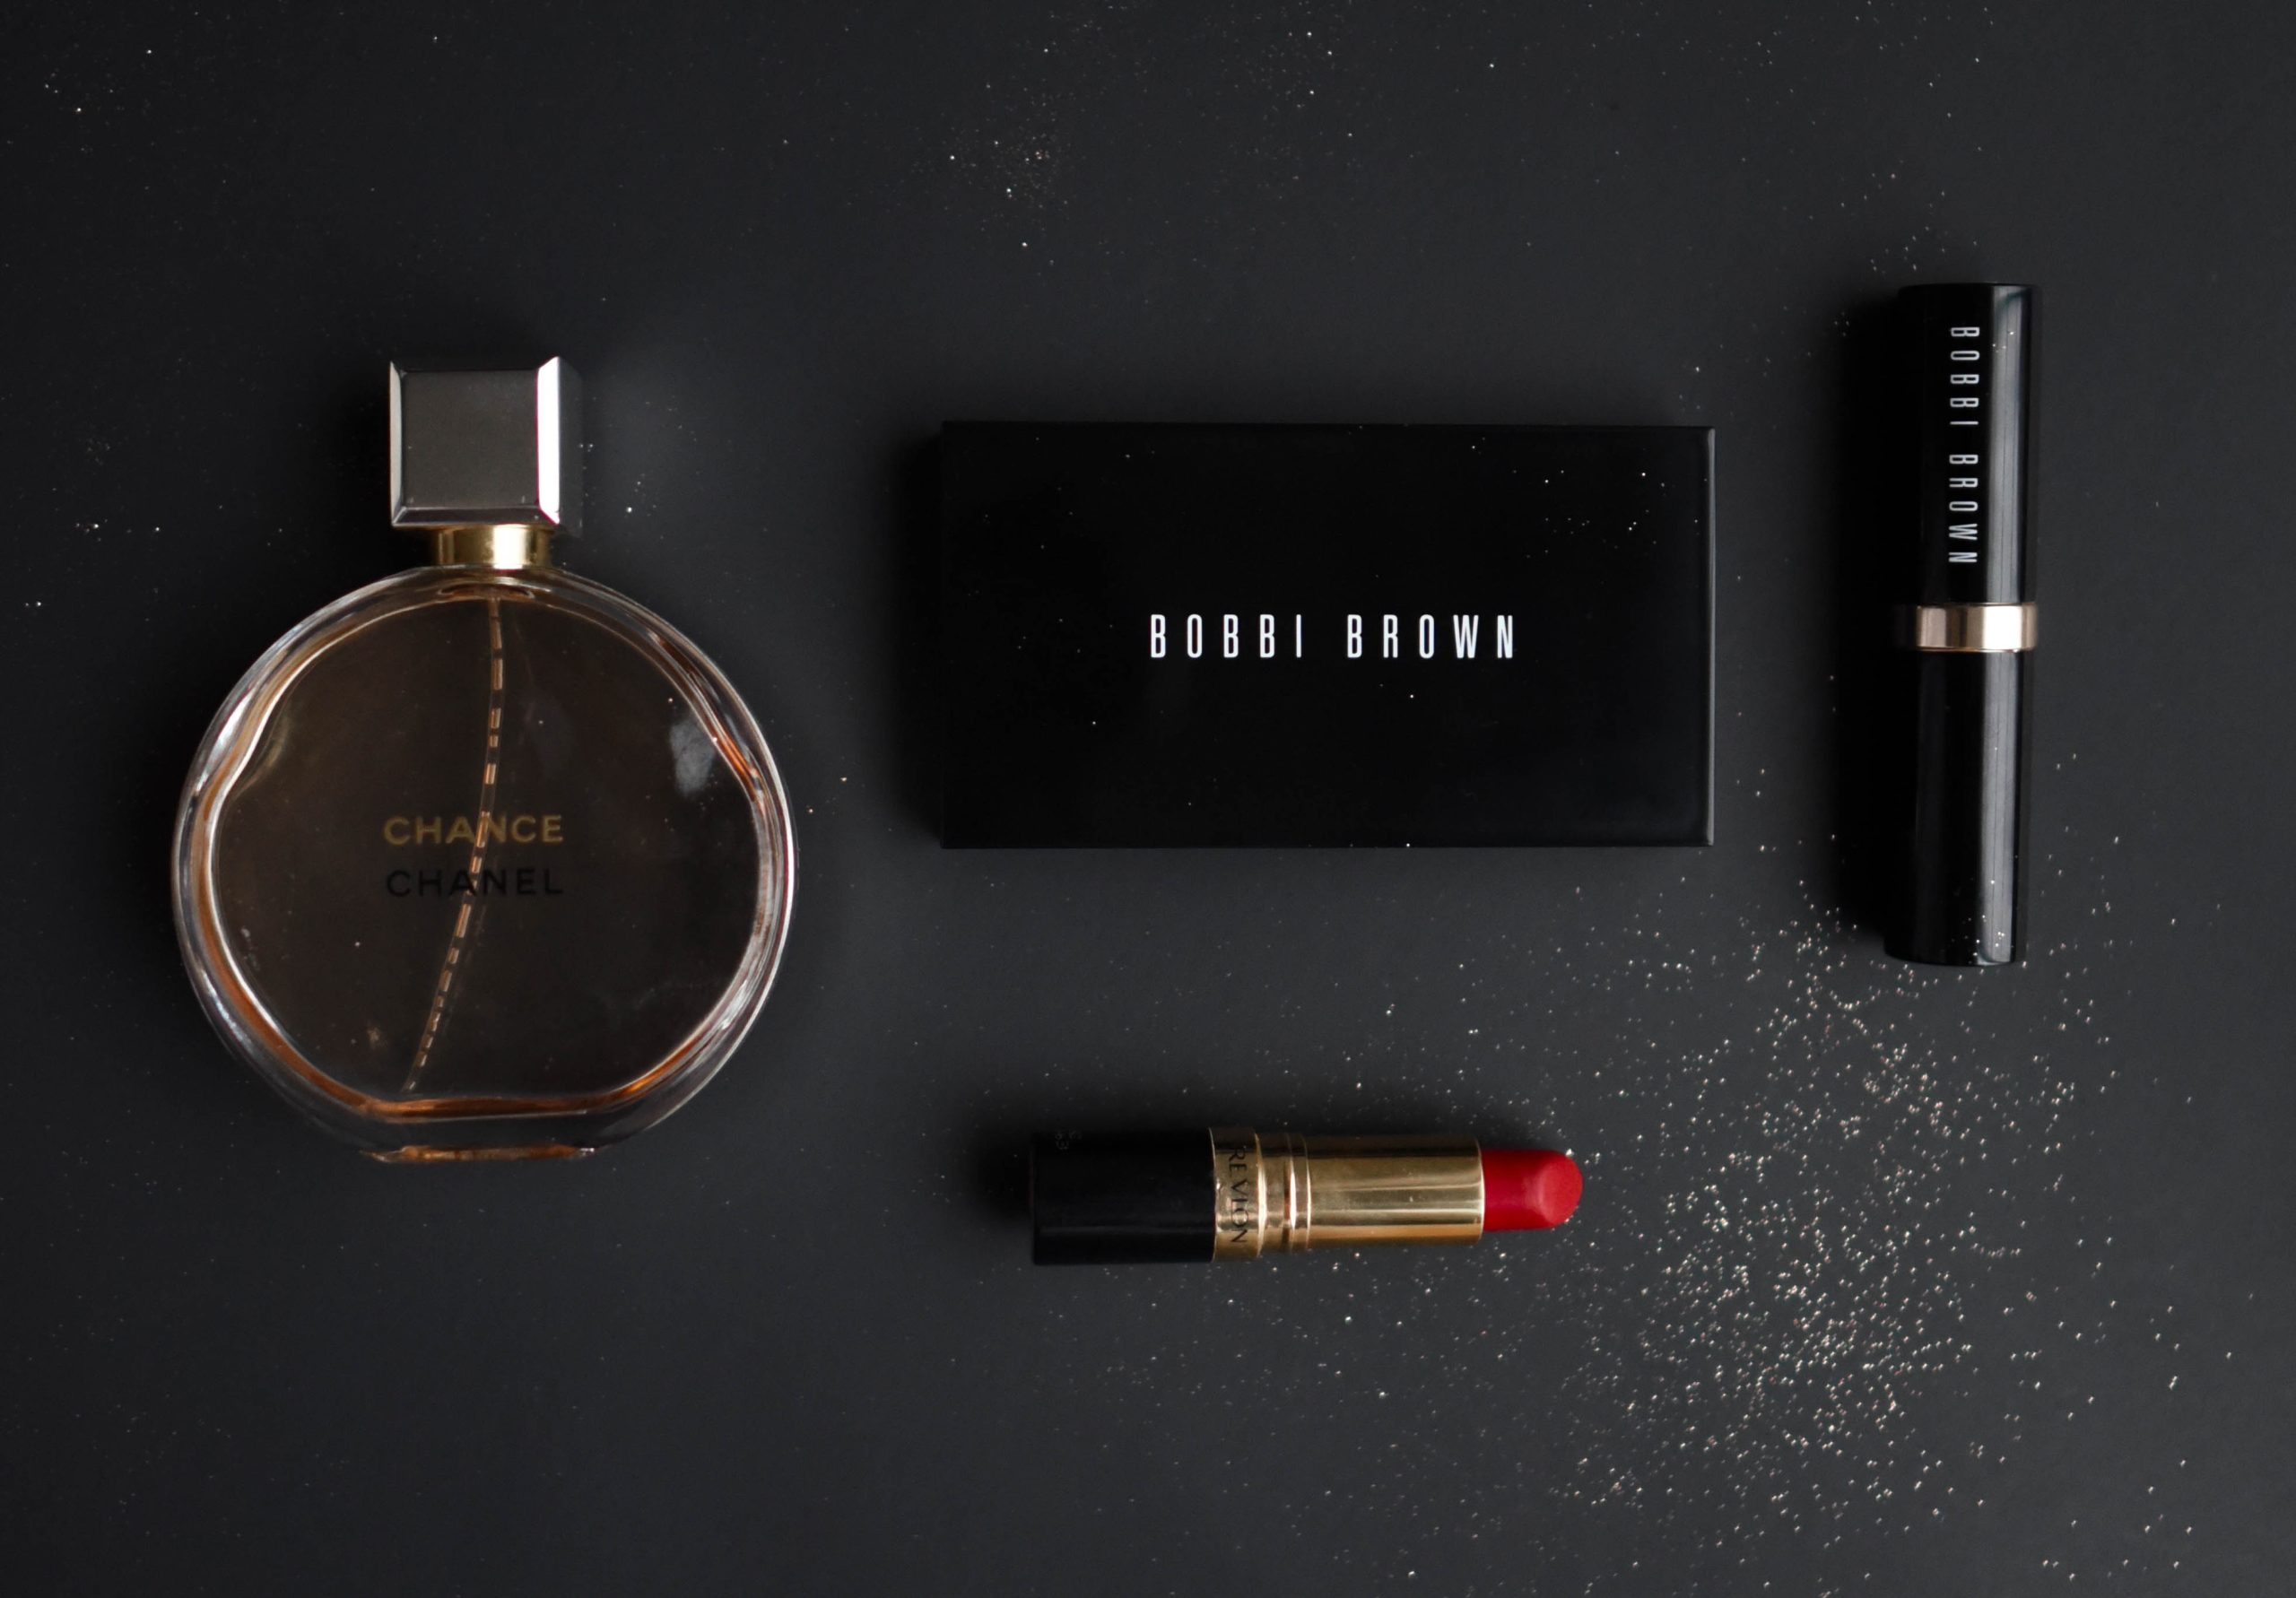 Dobre i tanie perfumy – gdzie ich szukać?